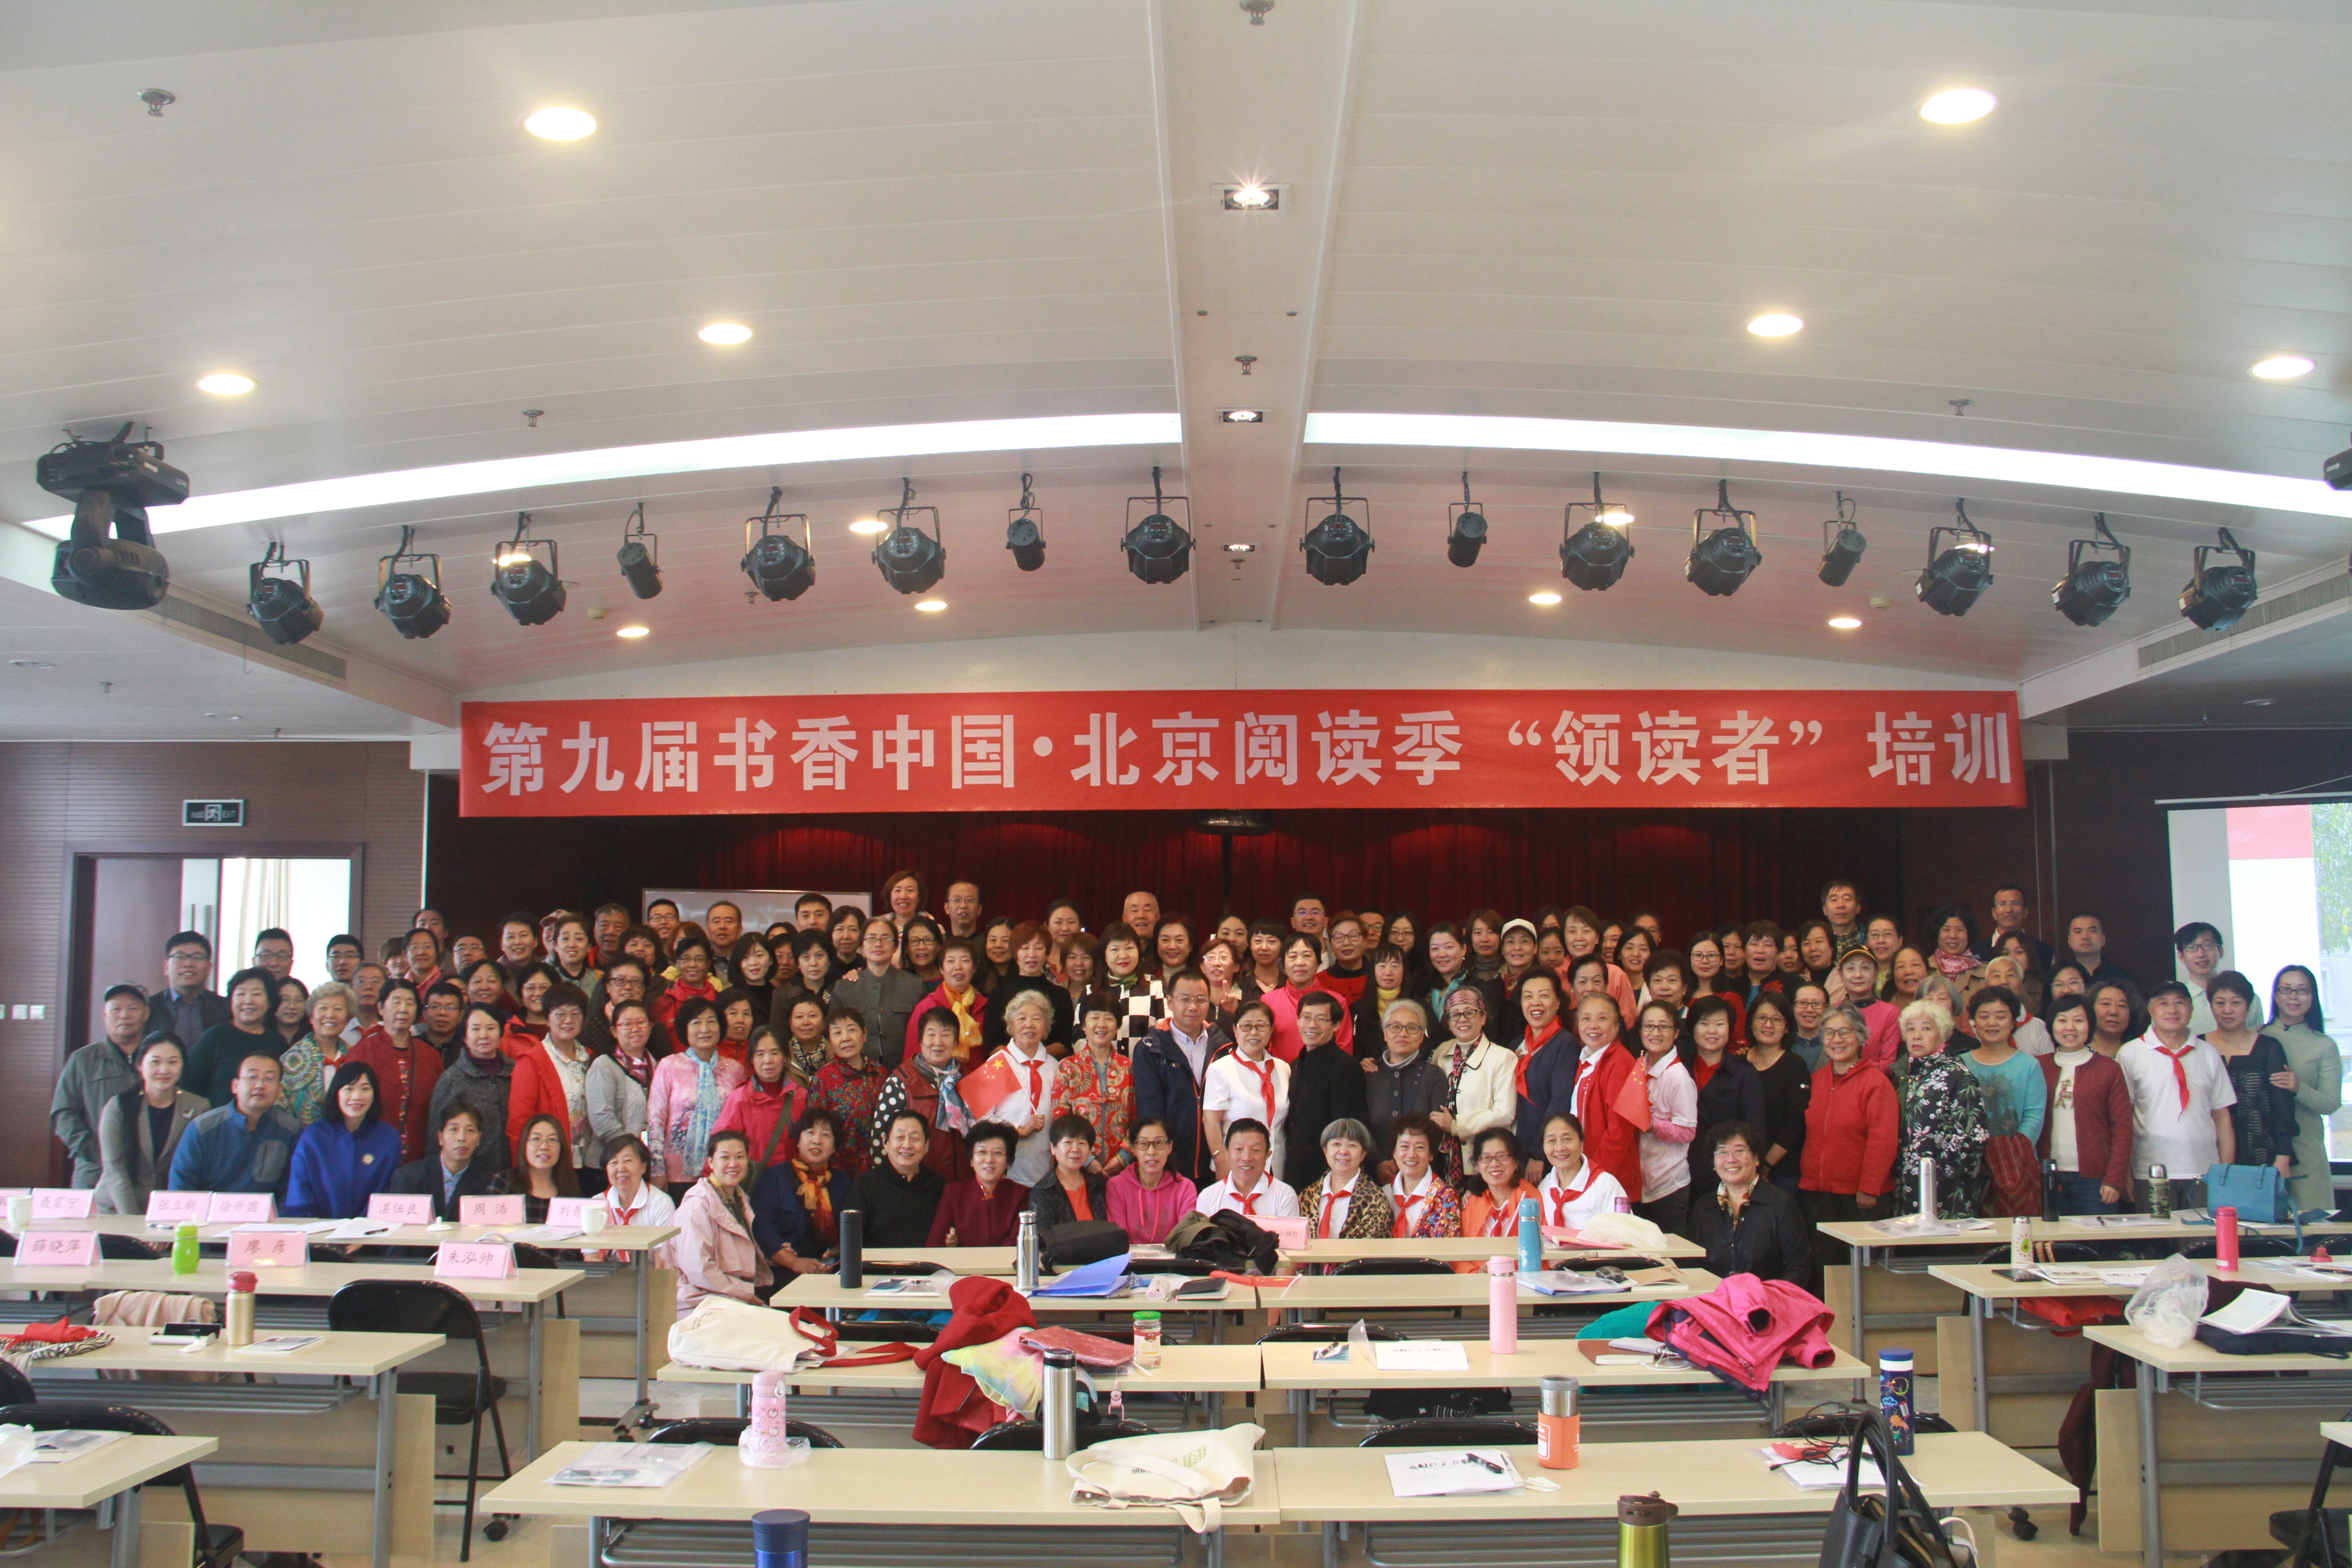 2019年10月16日，“领读者”计划第二期培训会在北京出版集团成功举办，共培训了来自养老机构、街道社区的管理者和工作人员、阅读爱好者约180名。